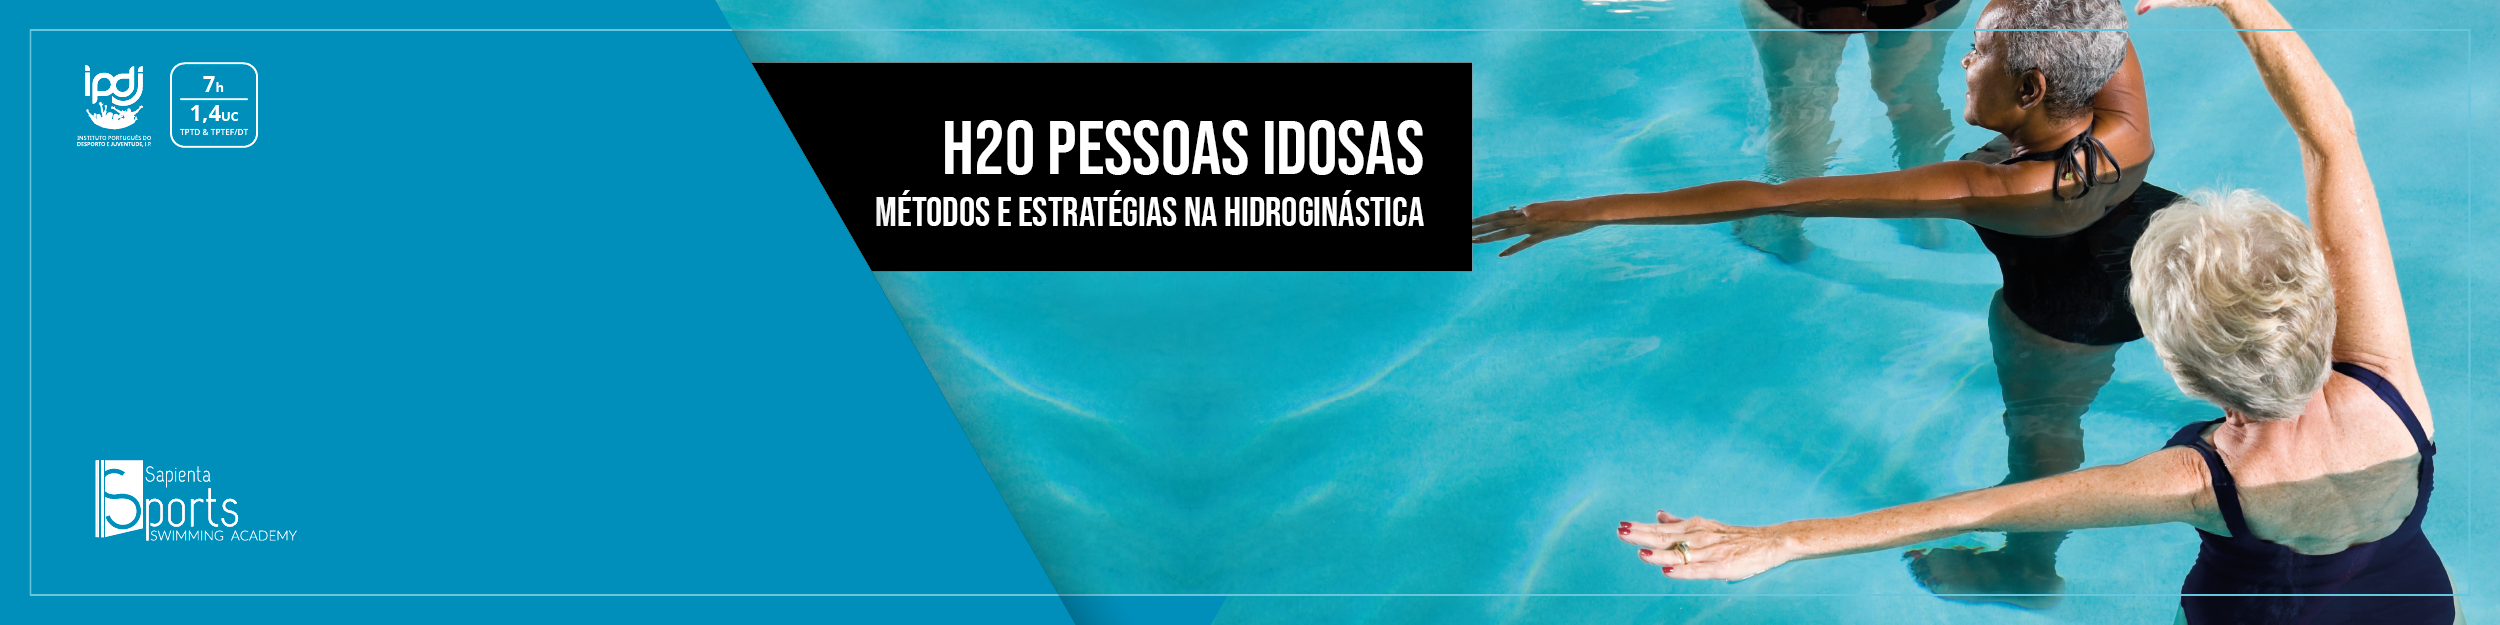 H2O Pessoas Idosas | Métodos e Estratégias na Hidroginástica